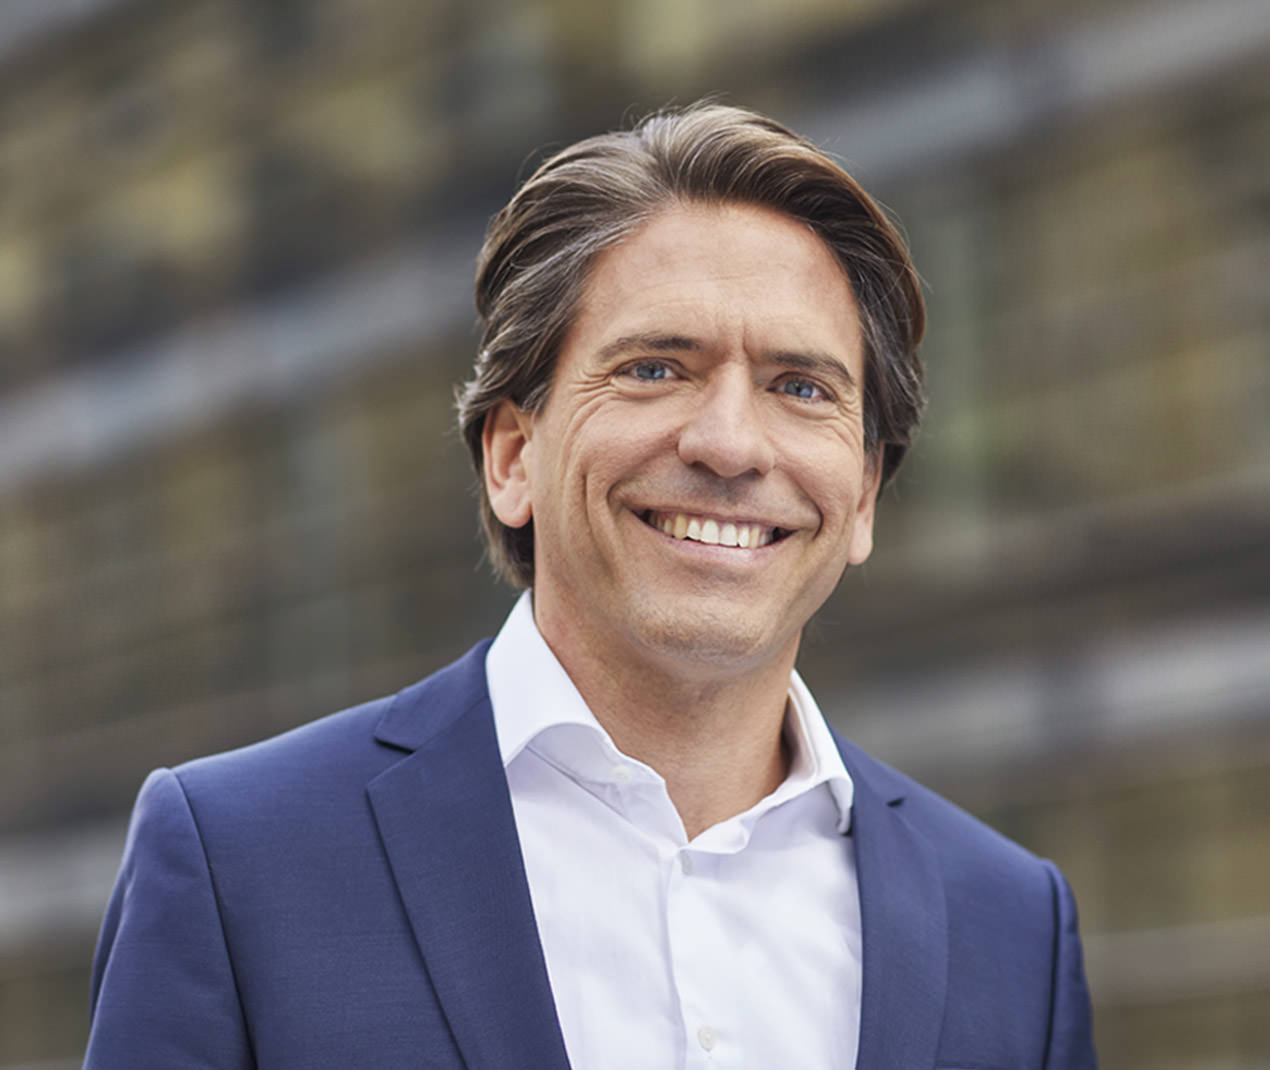 Oskar Schilcher, Equistone’s Chief Investment Officer